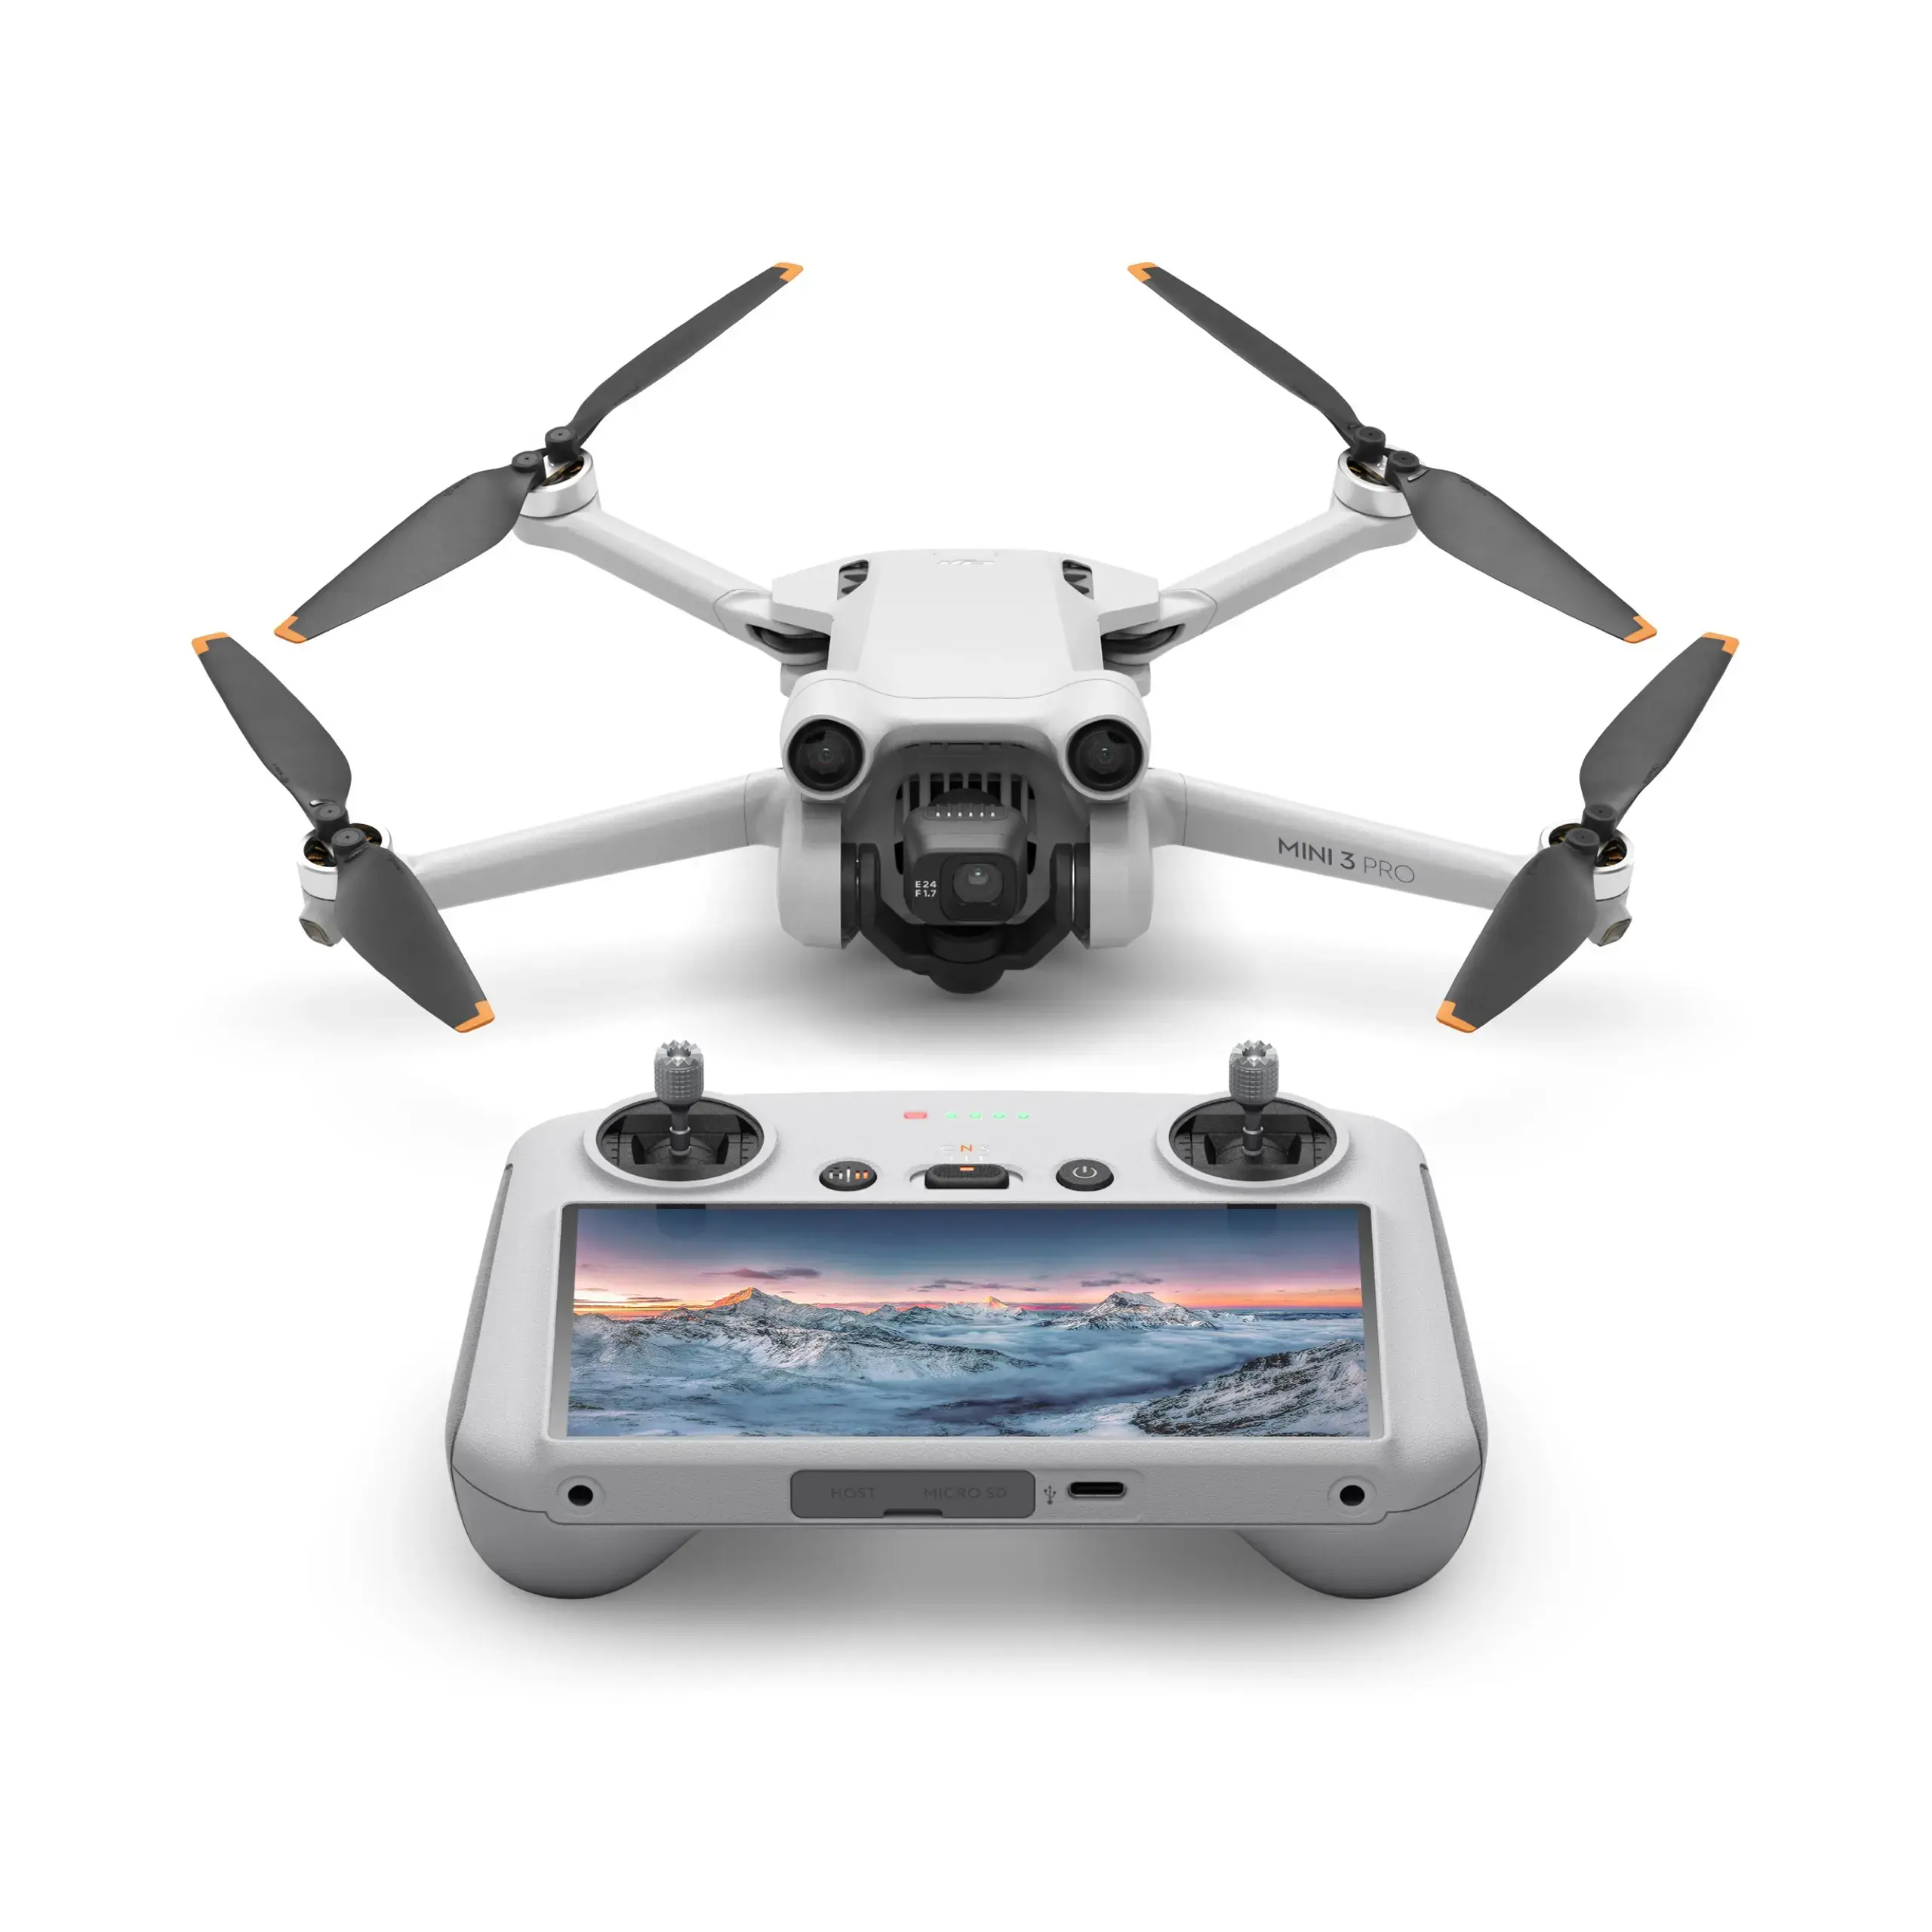 Mavic Mini 3 Pro Drone กล้องทางอากาศขนาดเล็กระดับ Pro สมาร์ทสามารถติดตามอุปกรณ์เสริมโดรนยิงแนวตั้งแบบไม่มีการสูญเสียของเครื่องบินได้